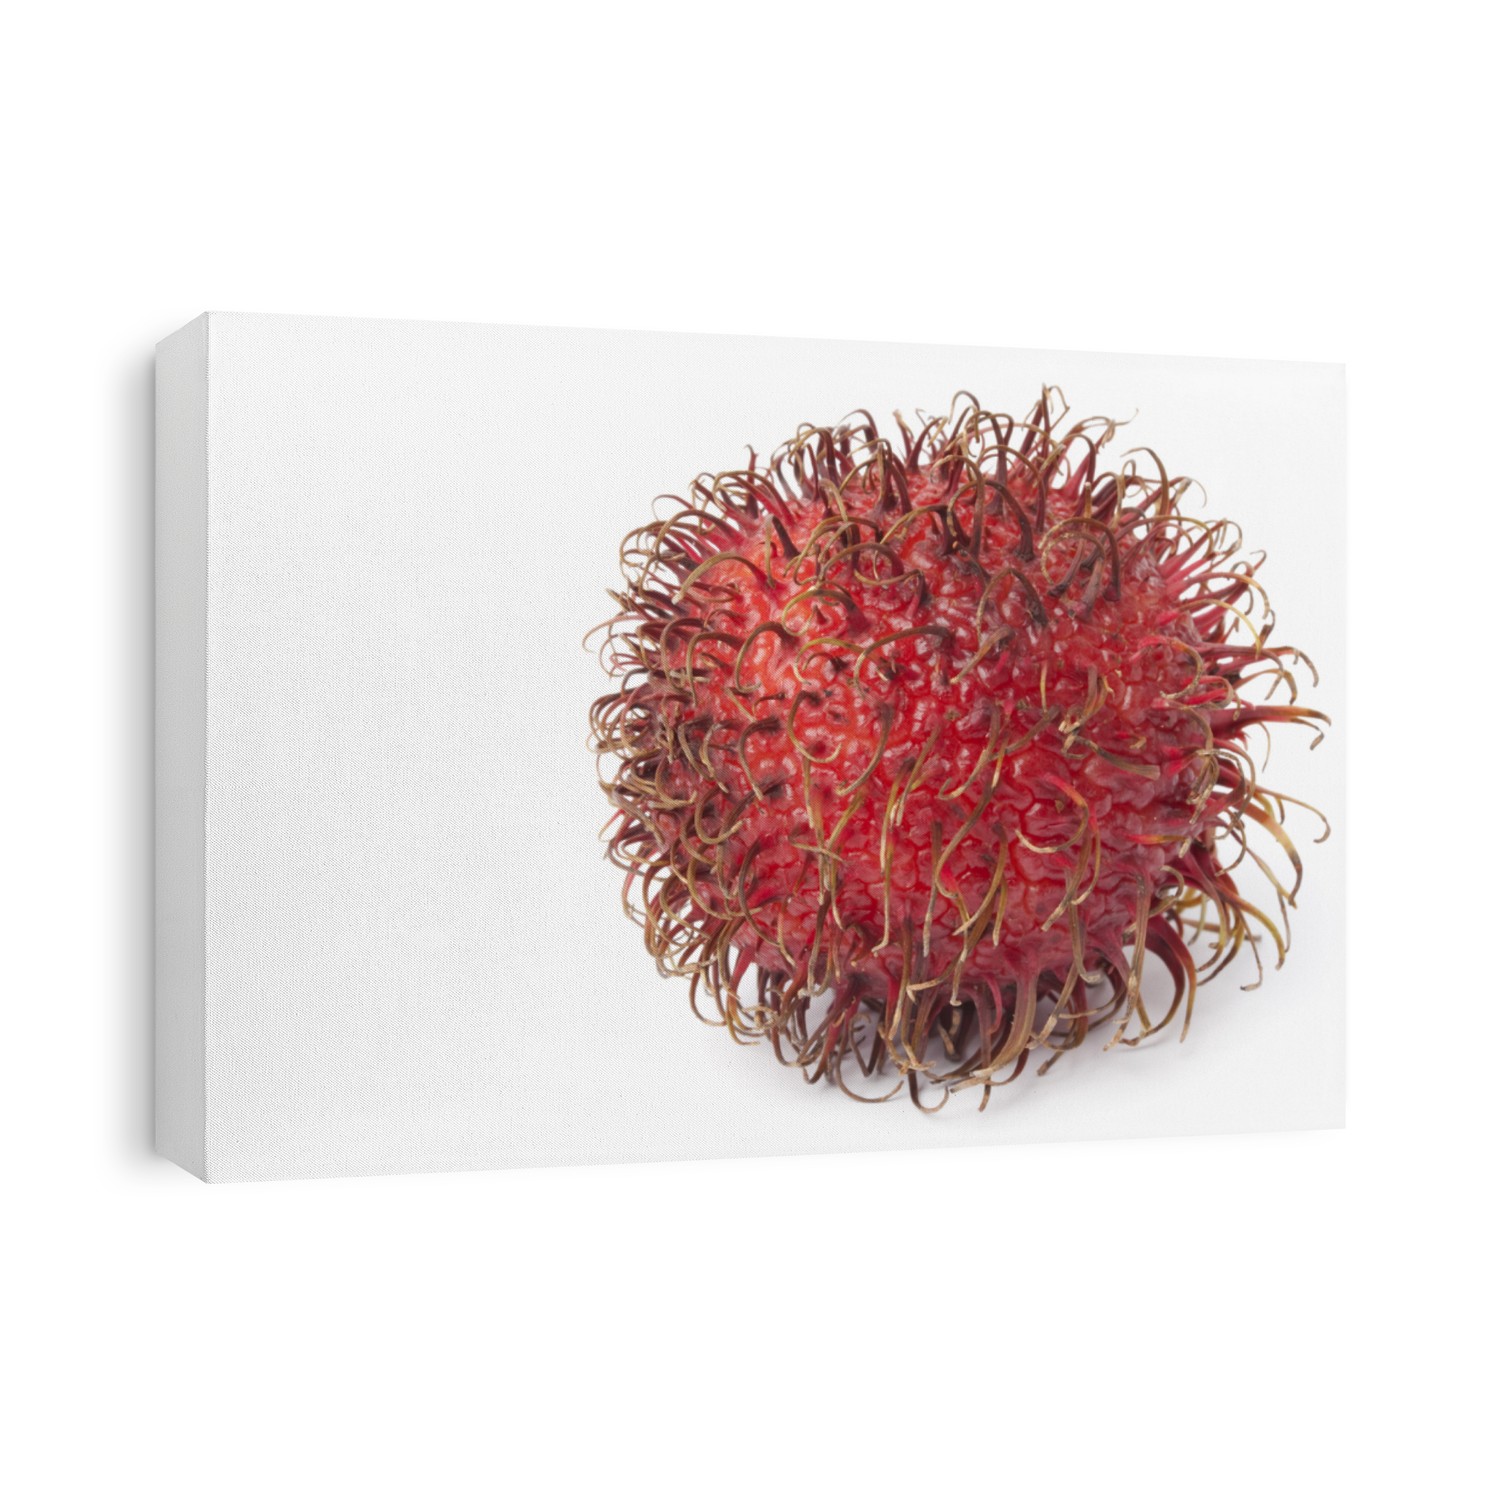 Whole single ripe rambutan fruit isolated on white background